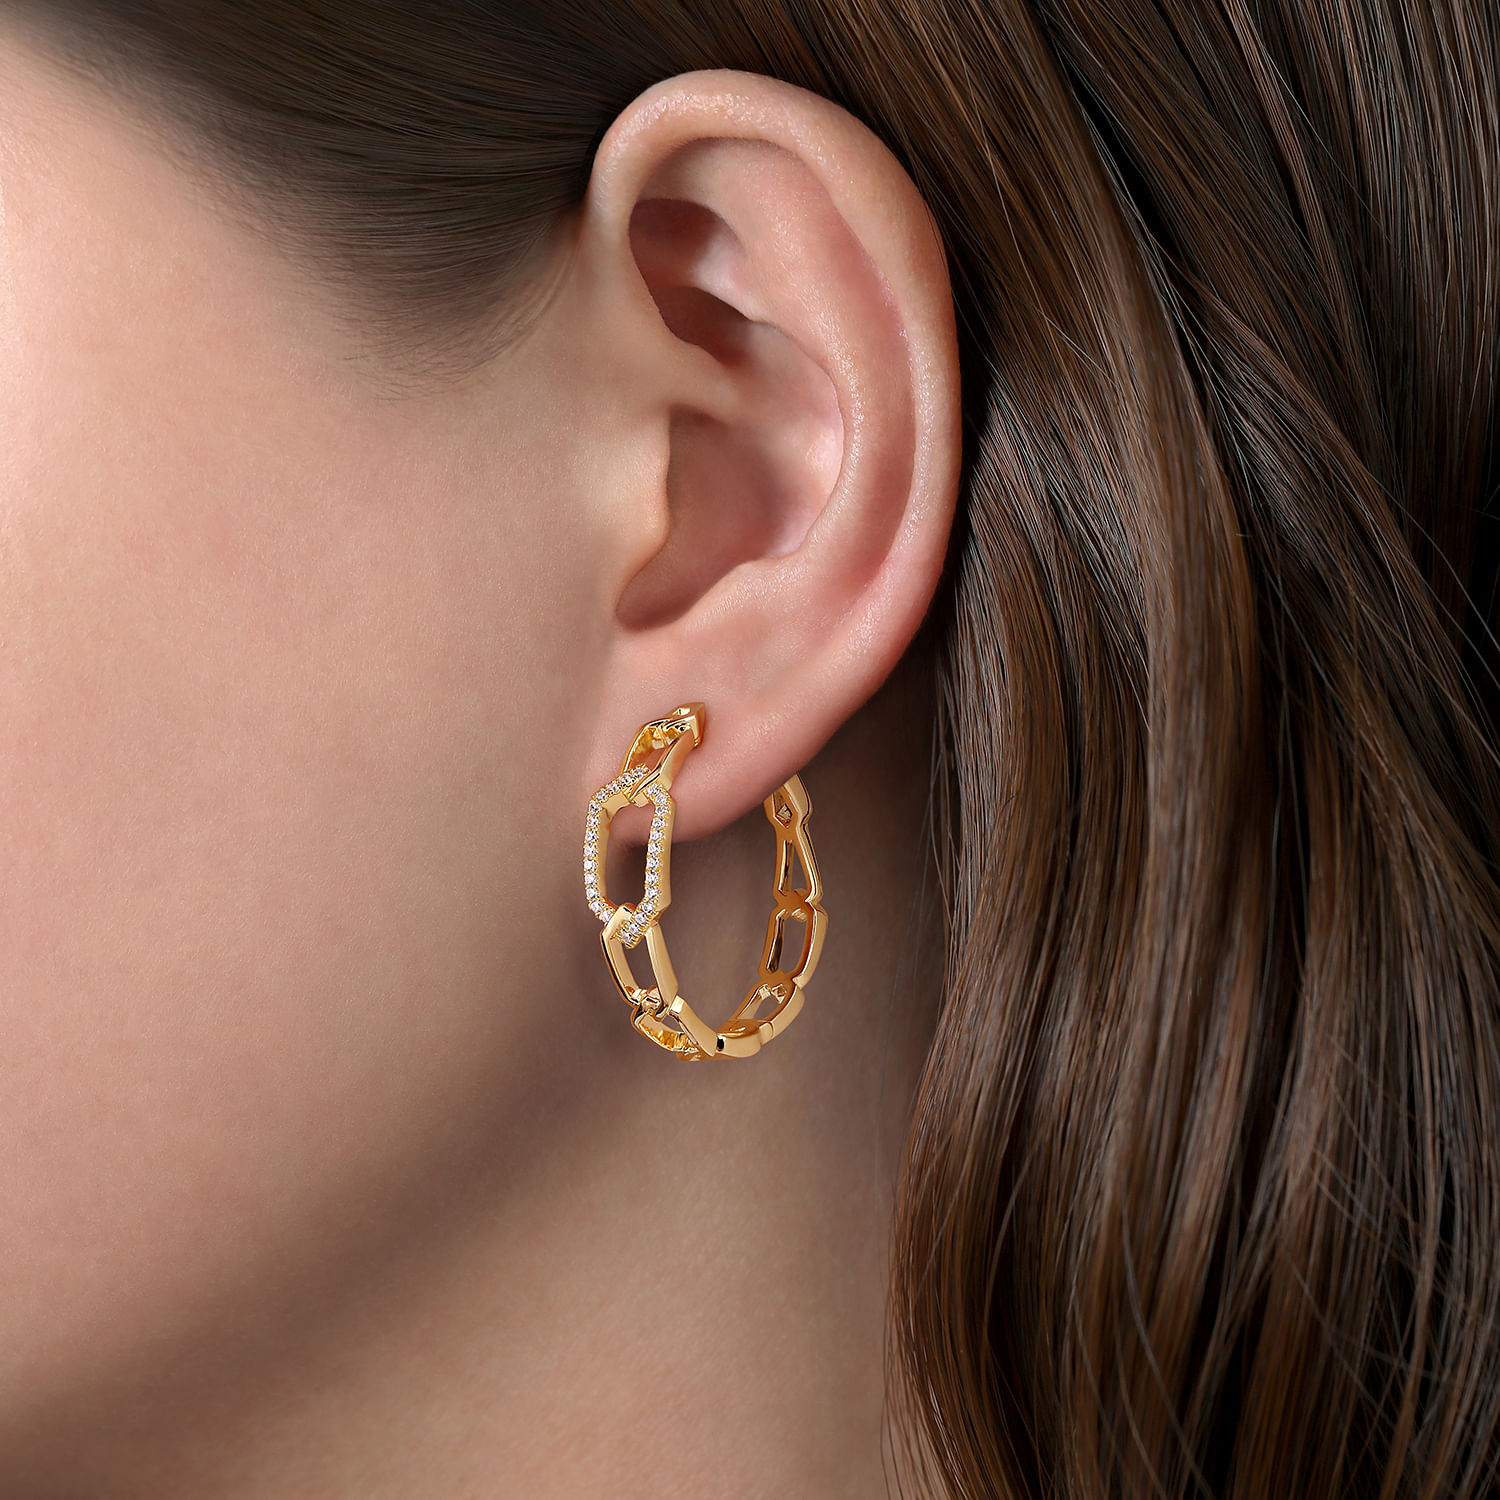 30mm 14K Yellow Gold Diamond Link Geometric Hoops Earrings